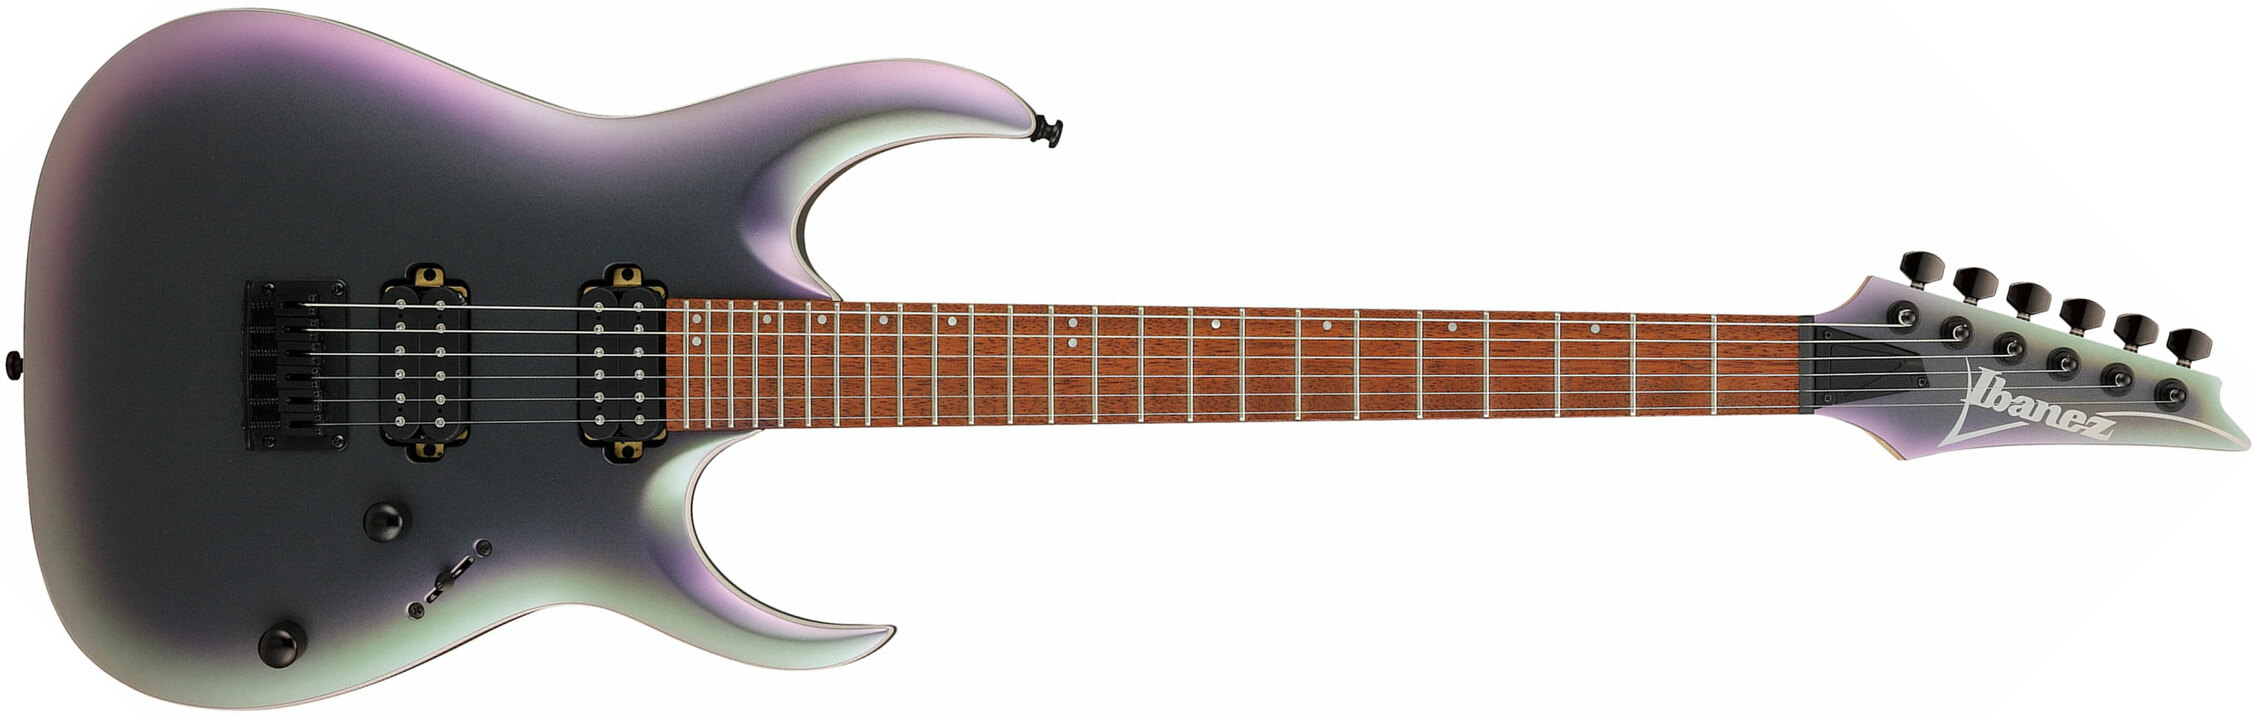 Ibanez Rga42ex Bam Standard Ht Hh Jat - Black Aurora Burst Matte - Guitarra eléctrica con forma de str. - Main picture